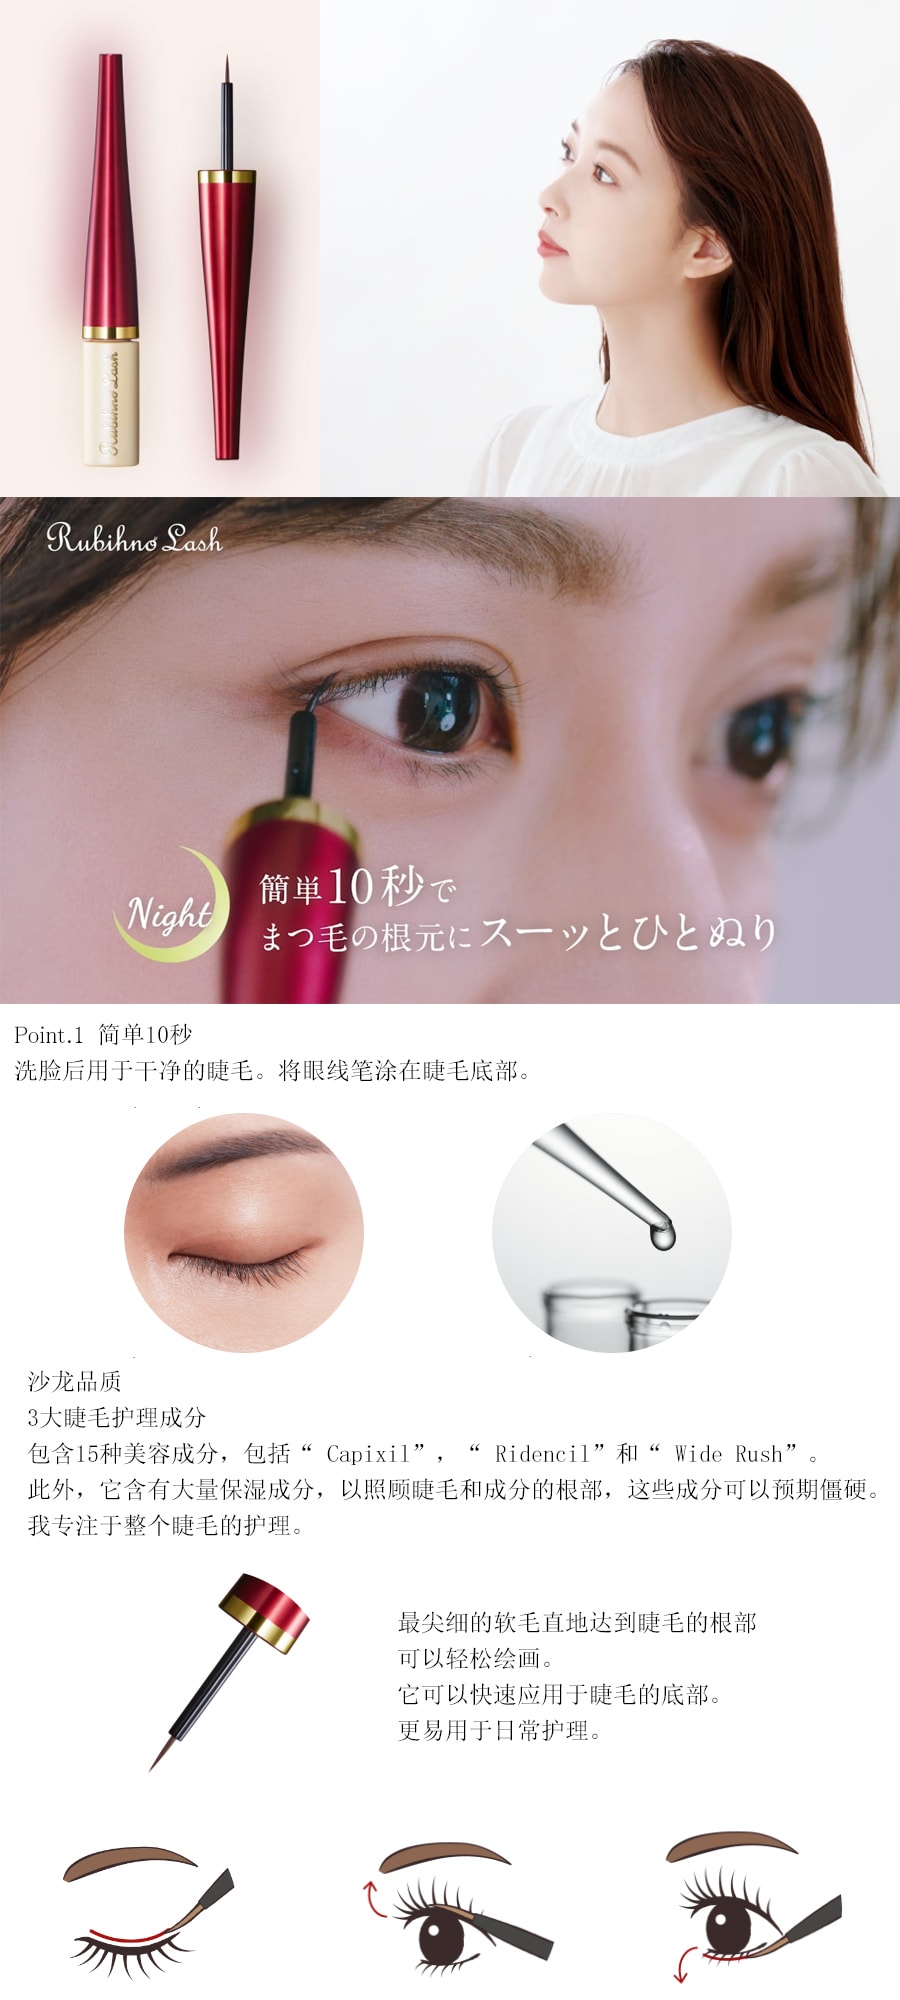 【日本直邮】日本 BelleQ's Rubihno 定型增长睫毛美容液 4ml